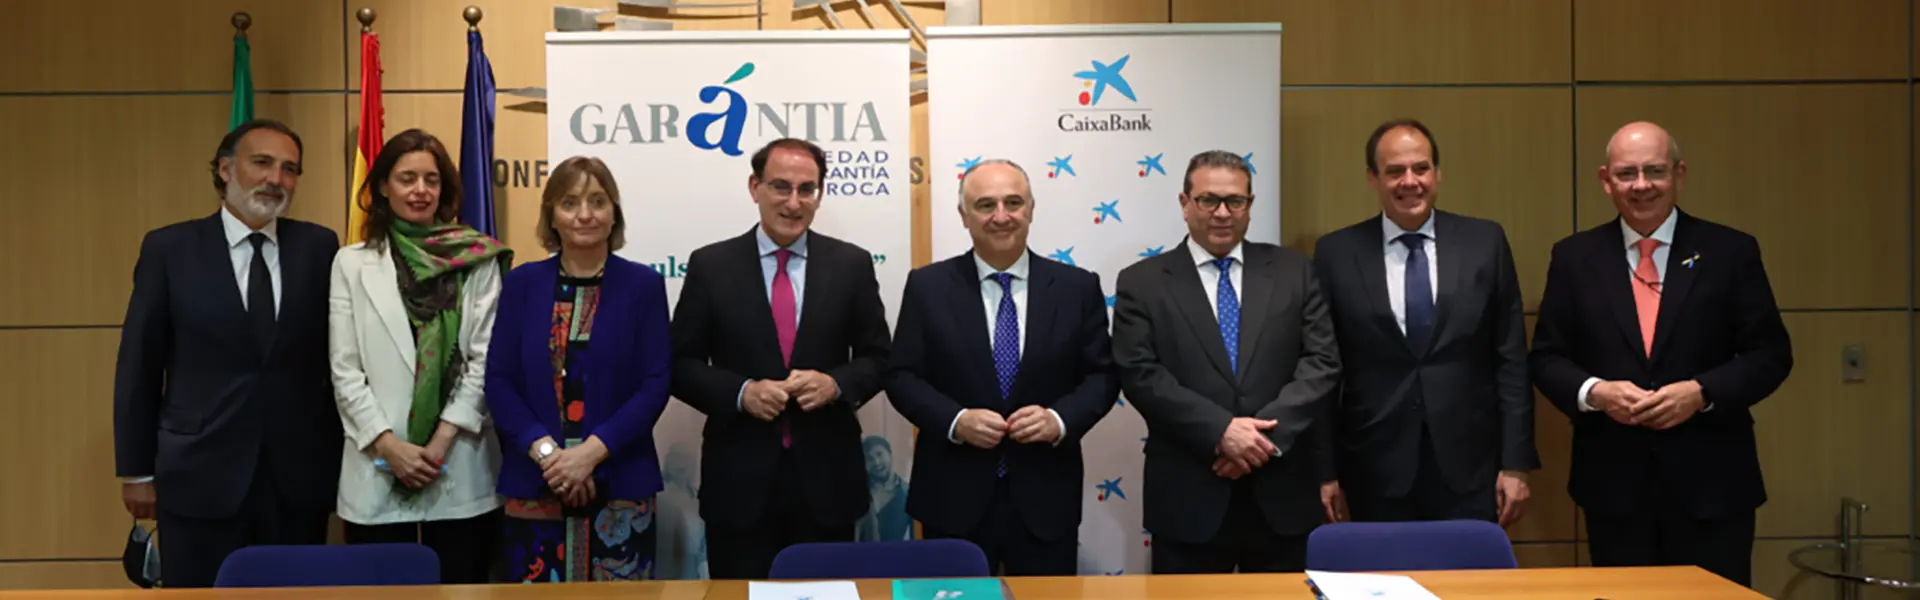 Garántia y Caixabank amplían a 250 millones la financiación a pymes y autónomos ultimas noticias